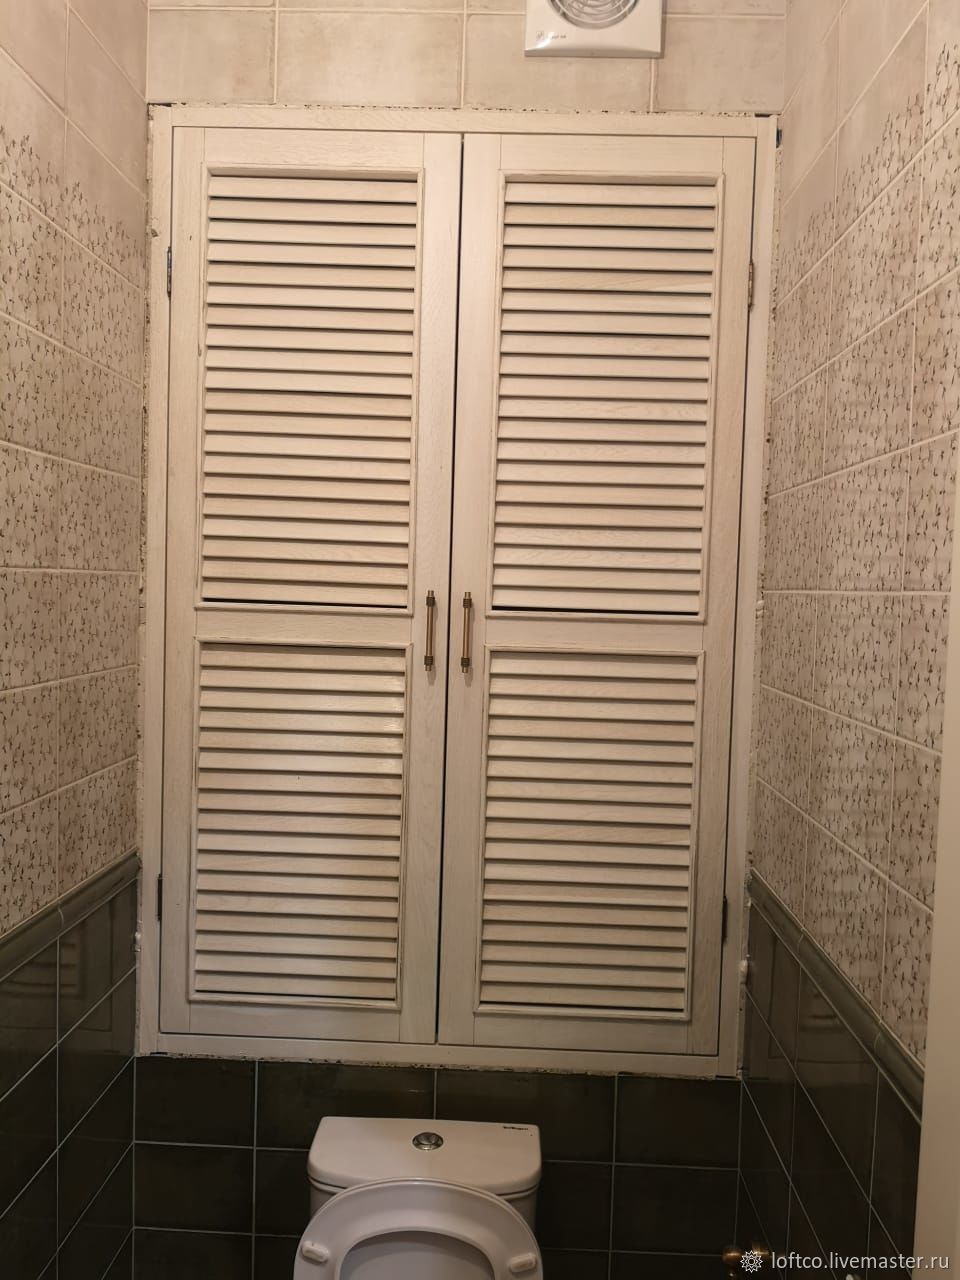 Дверцы из пластика для сантехнического шкафа в туалете